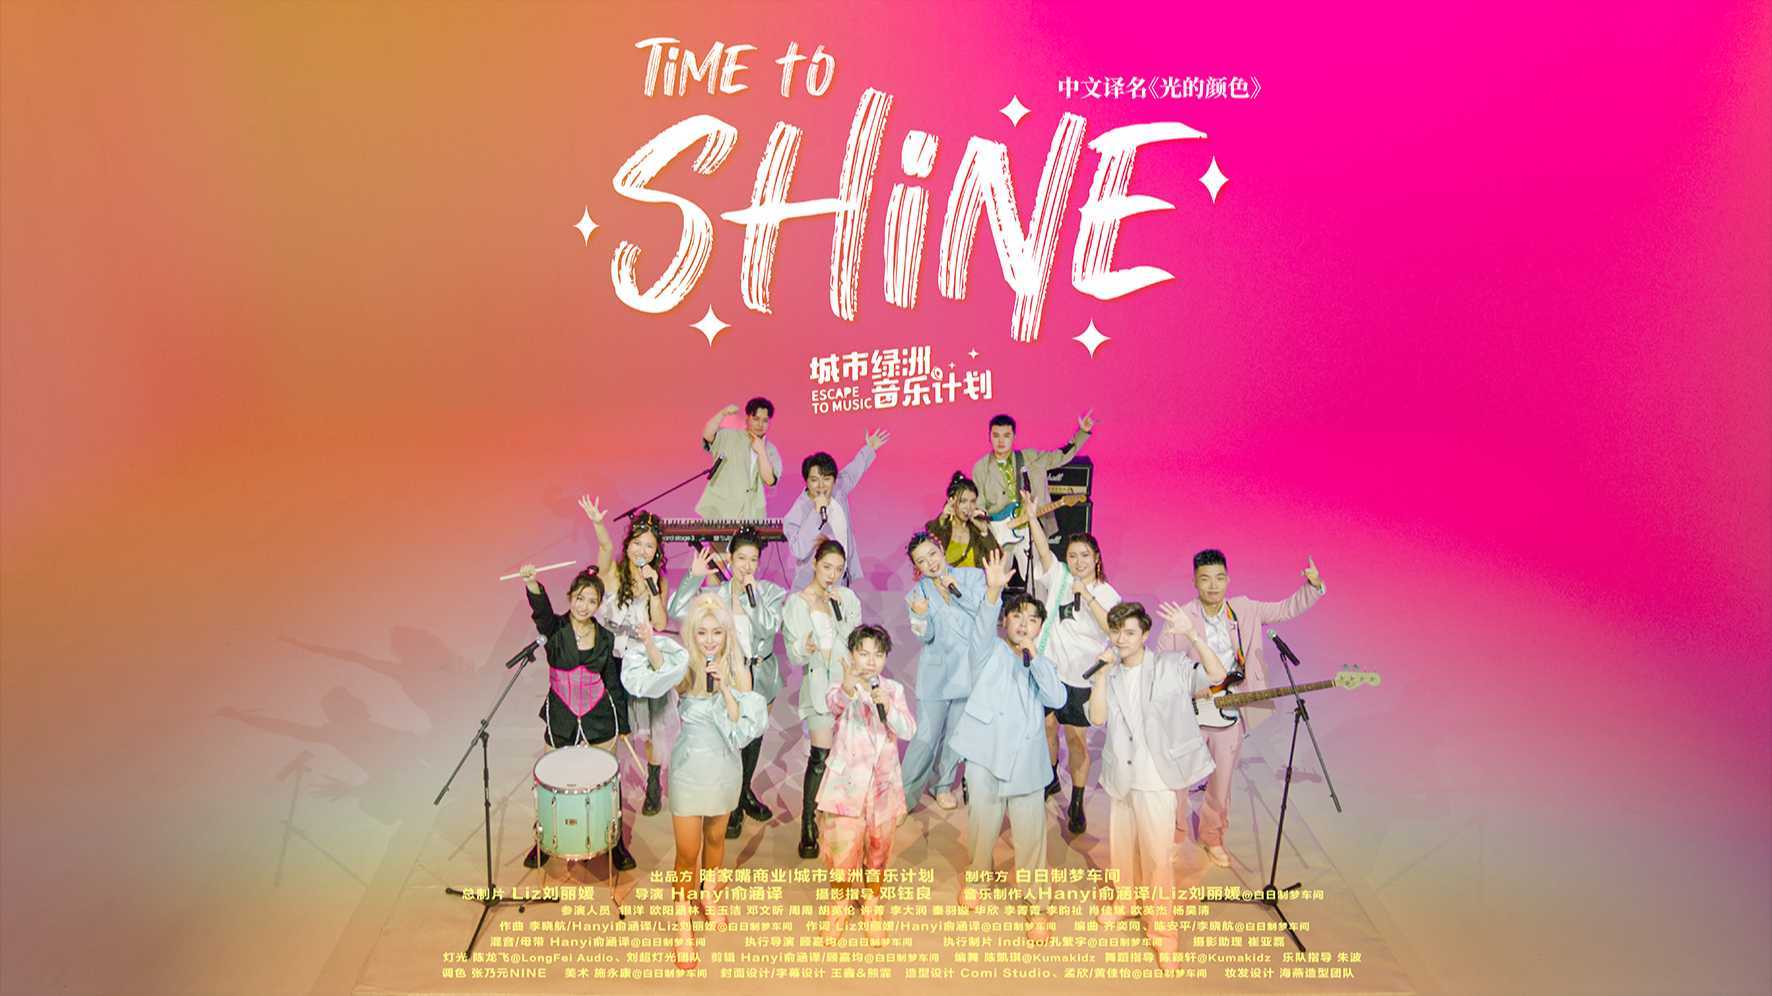 上海陆家嘴集团青年公益项目宣传MV《Time to shine》（光的颜色）